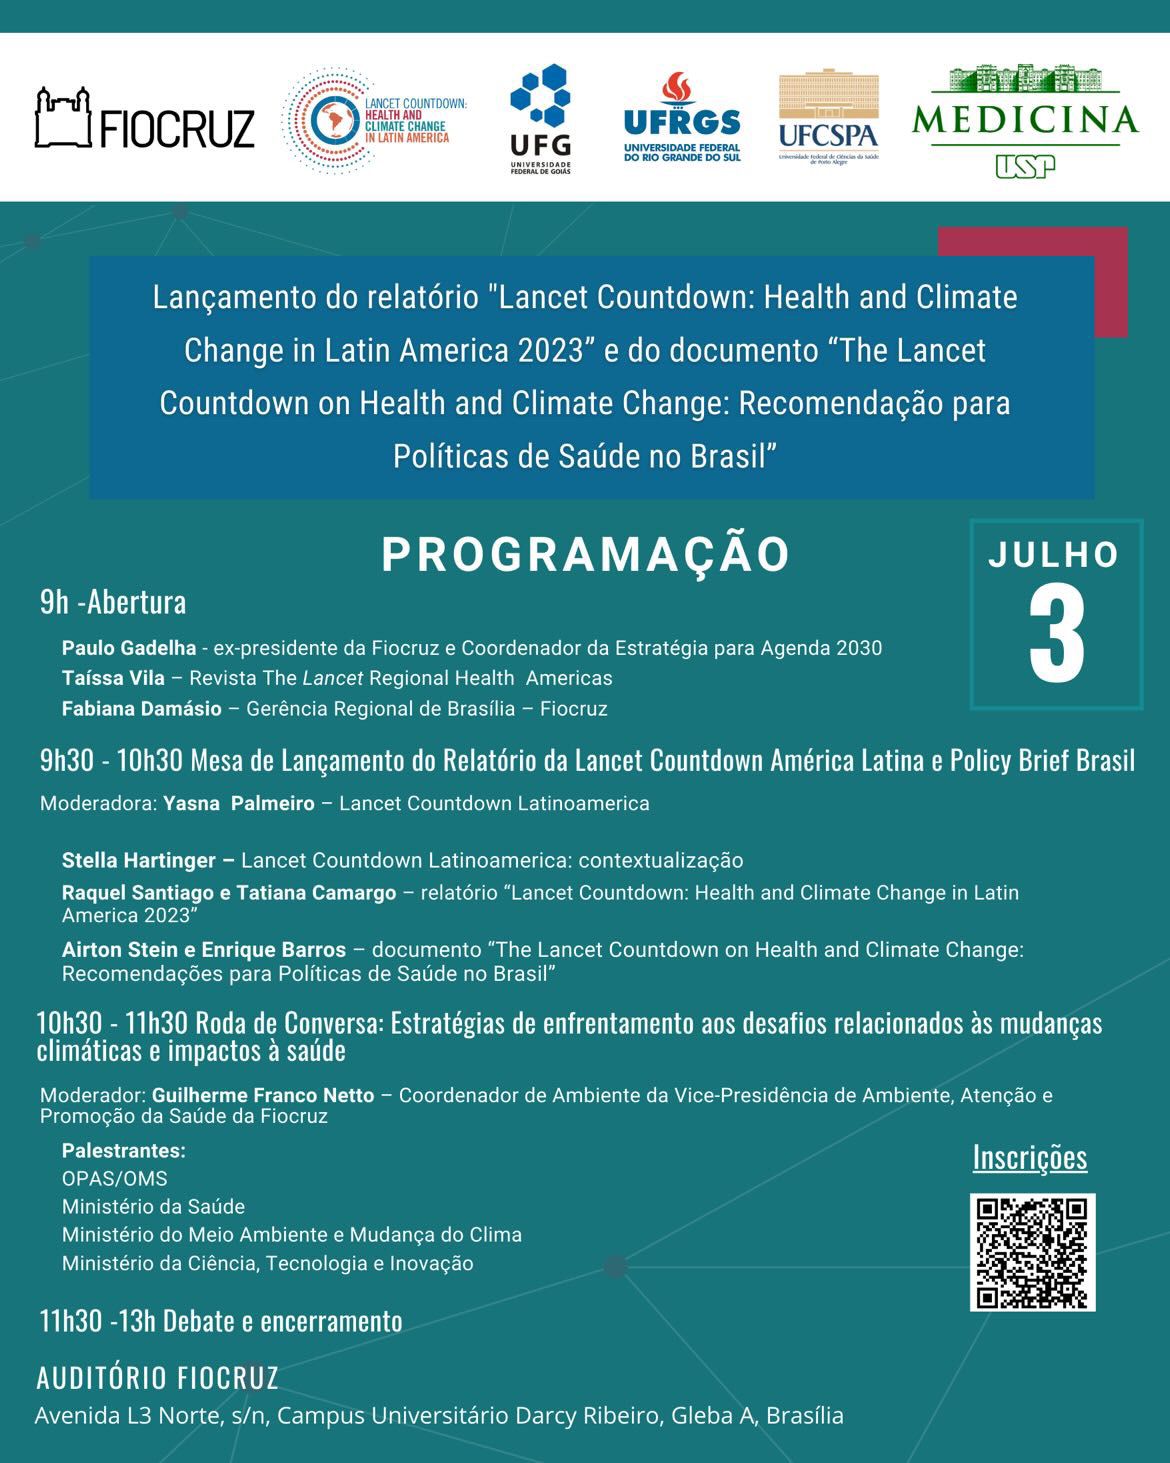 Lançamento do relatório Lancet Countdown América Latina e Policy Brief Brasil